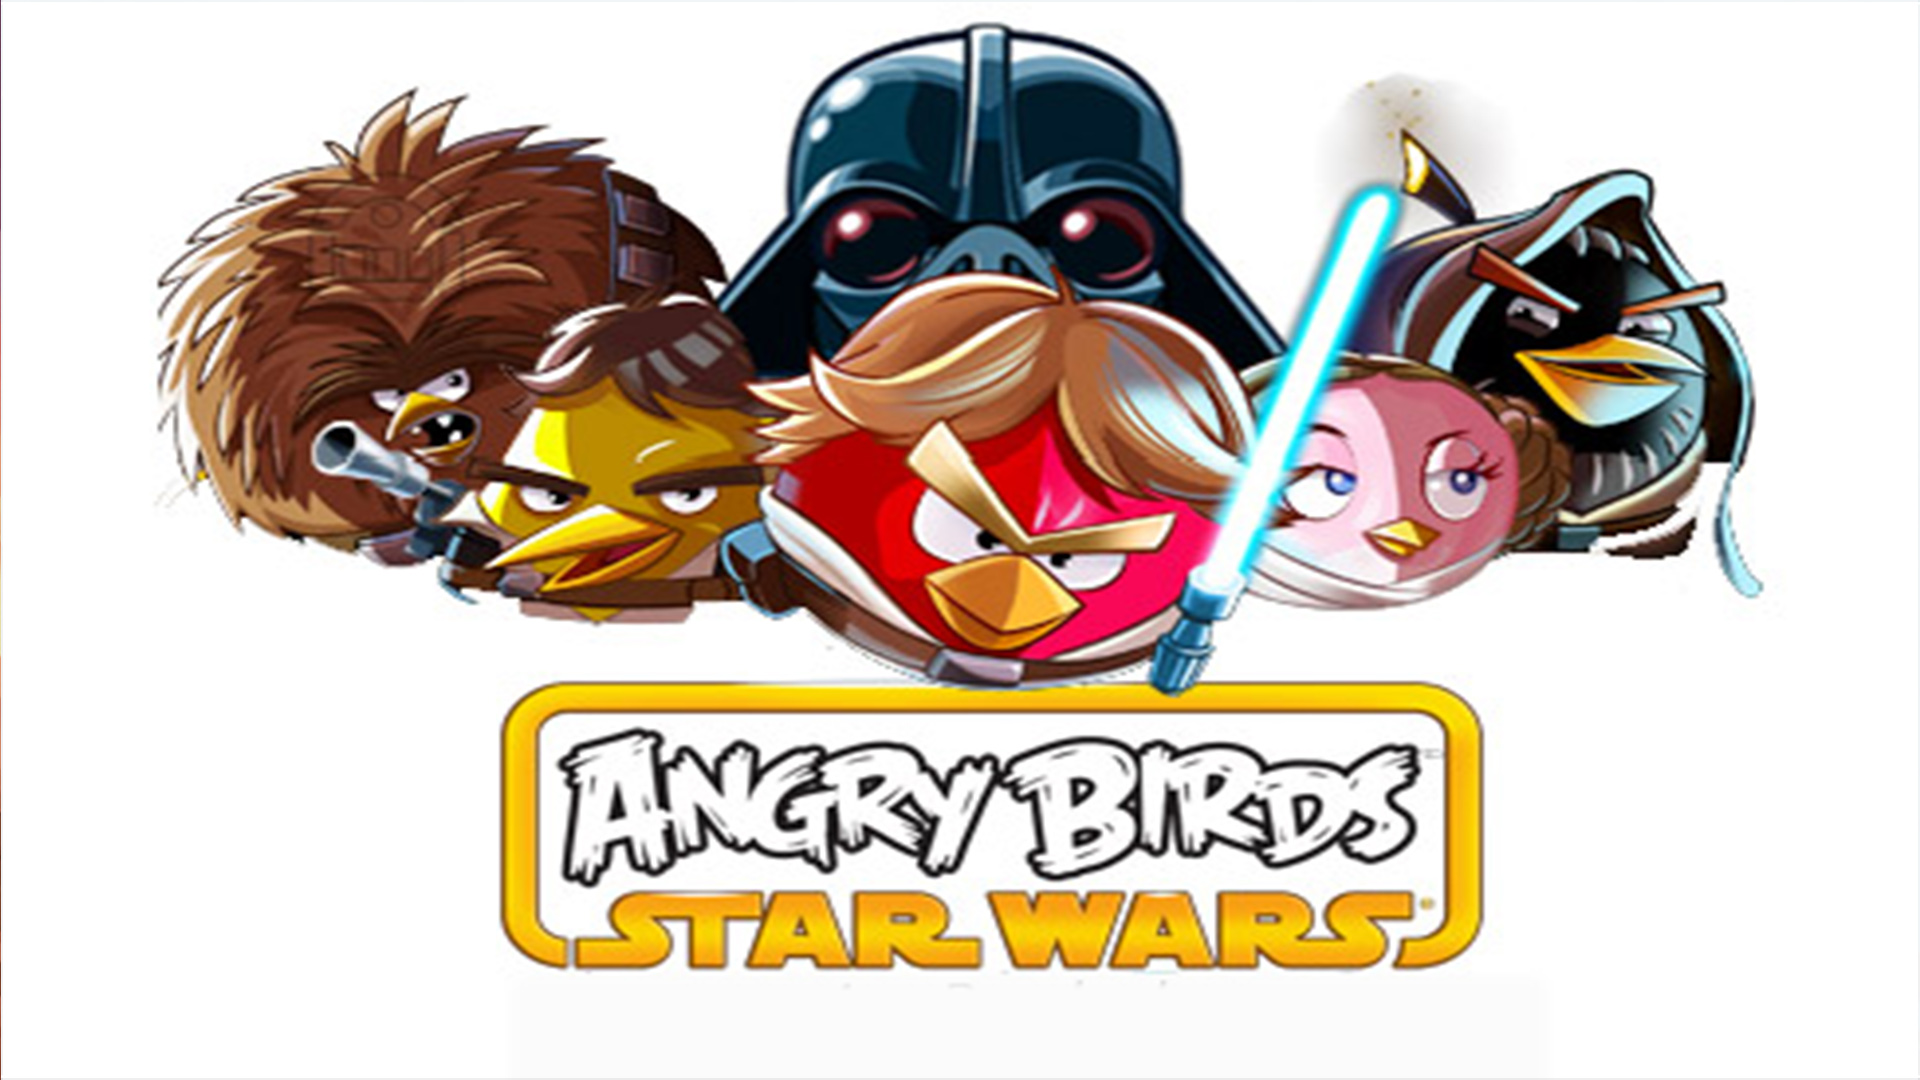 Melhores papéis de parede de Angry Birds Star Wars para tela do telefone